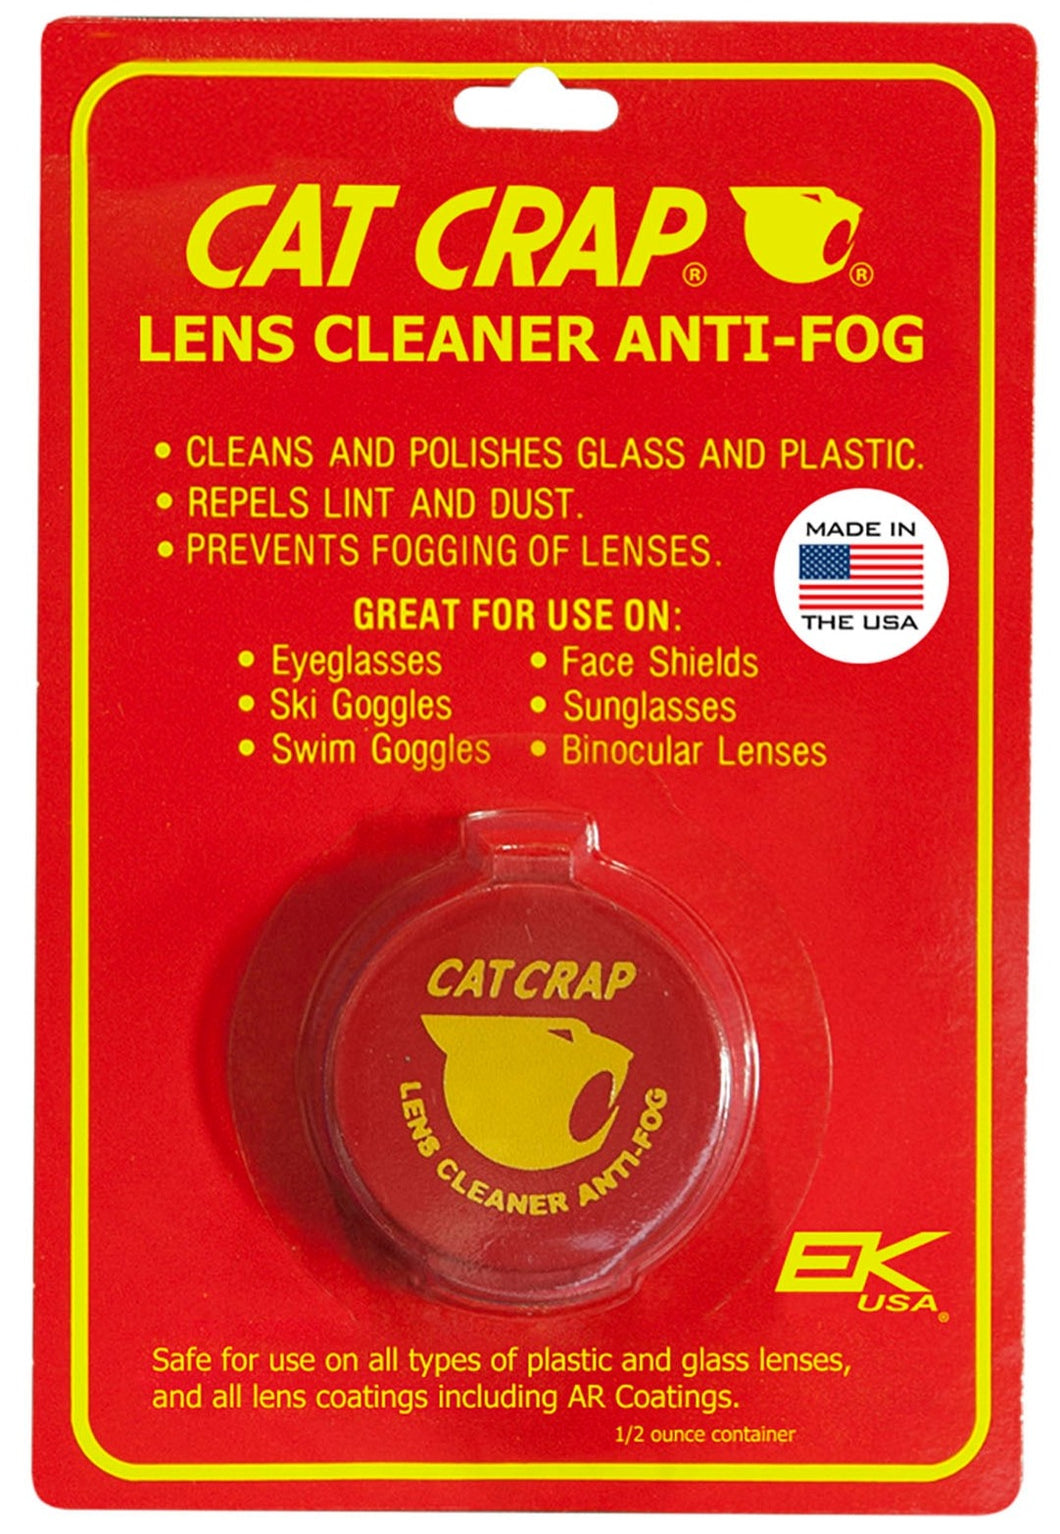 Cat Crap - Anti-Fog Lens Cleaner